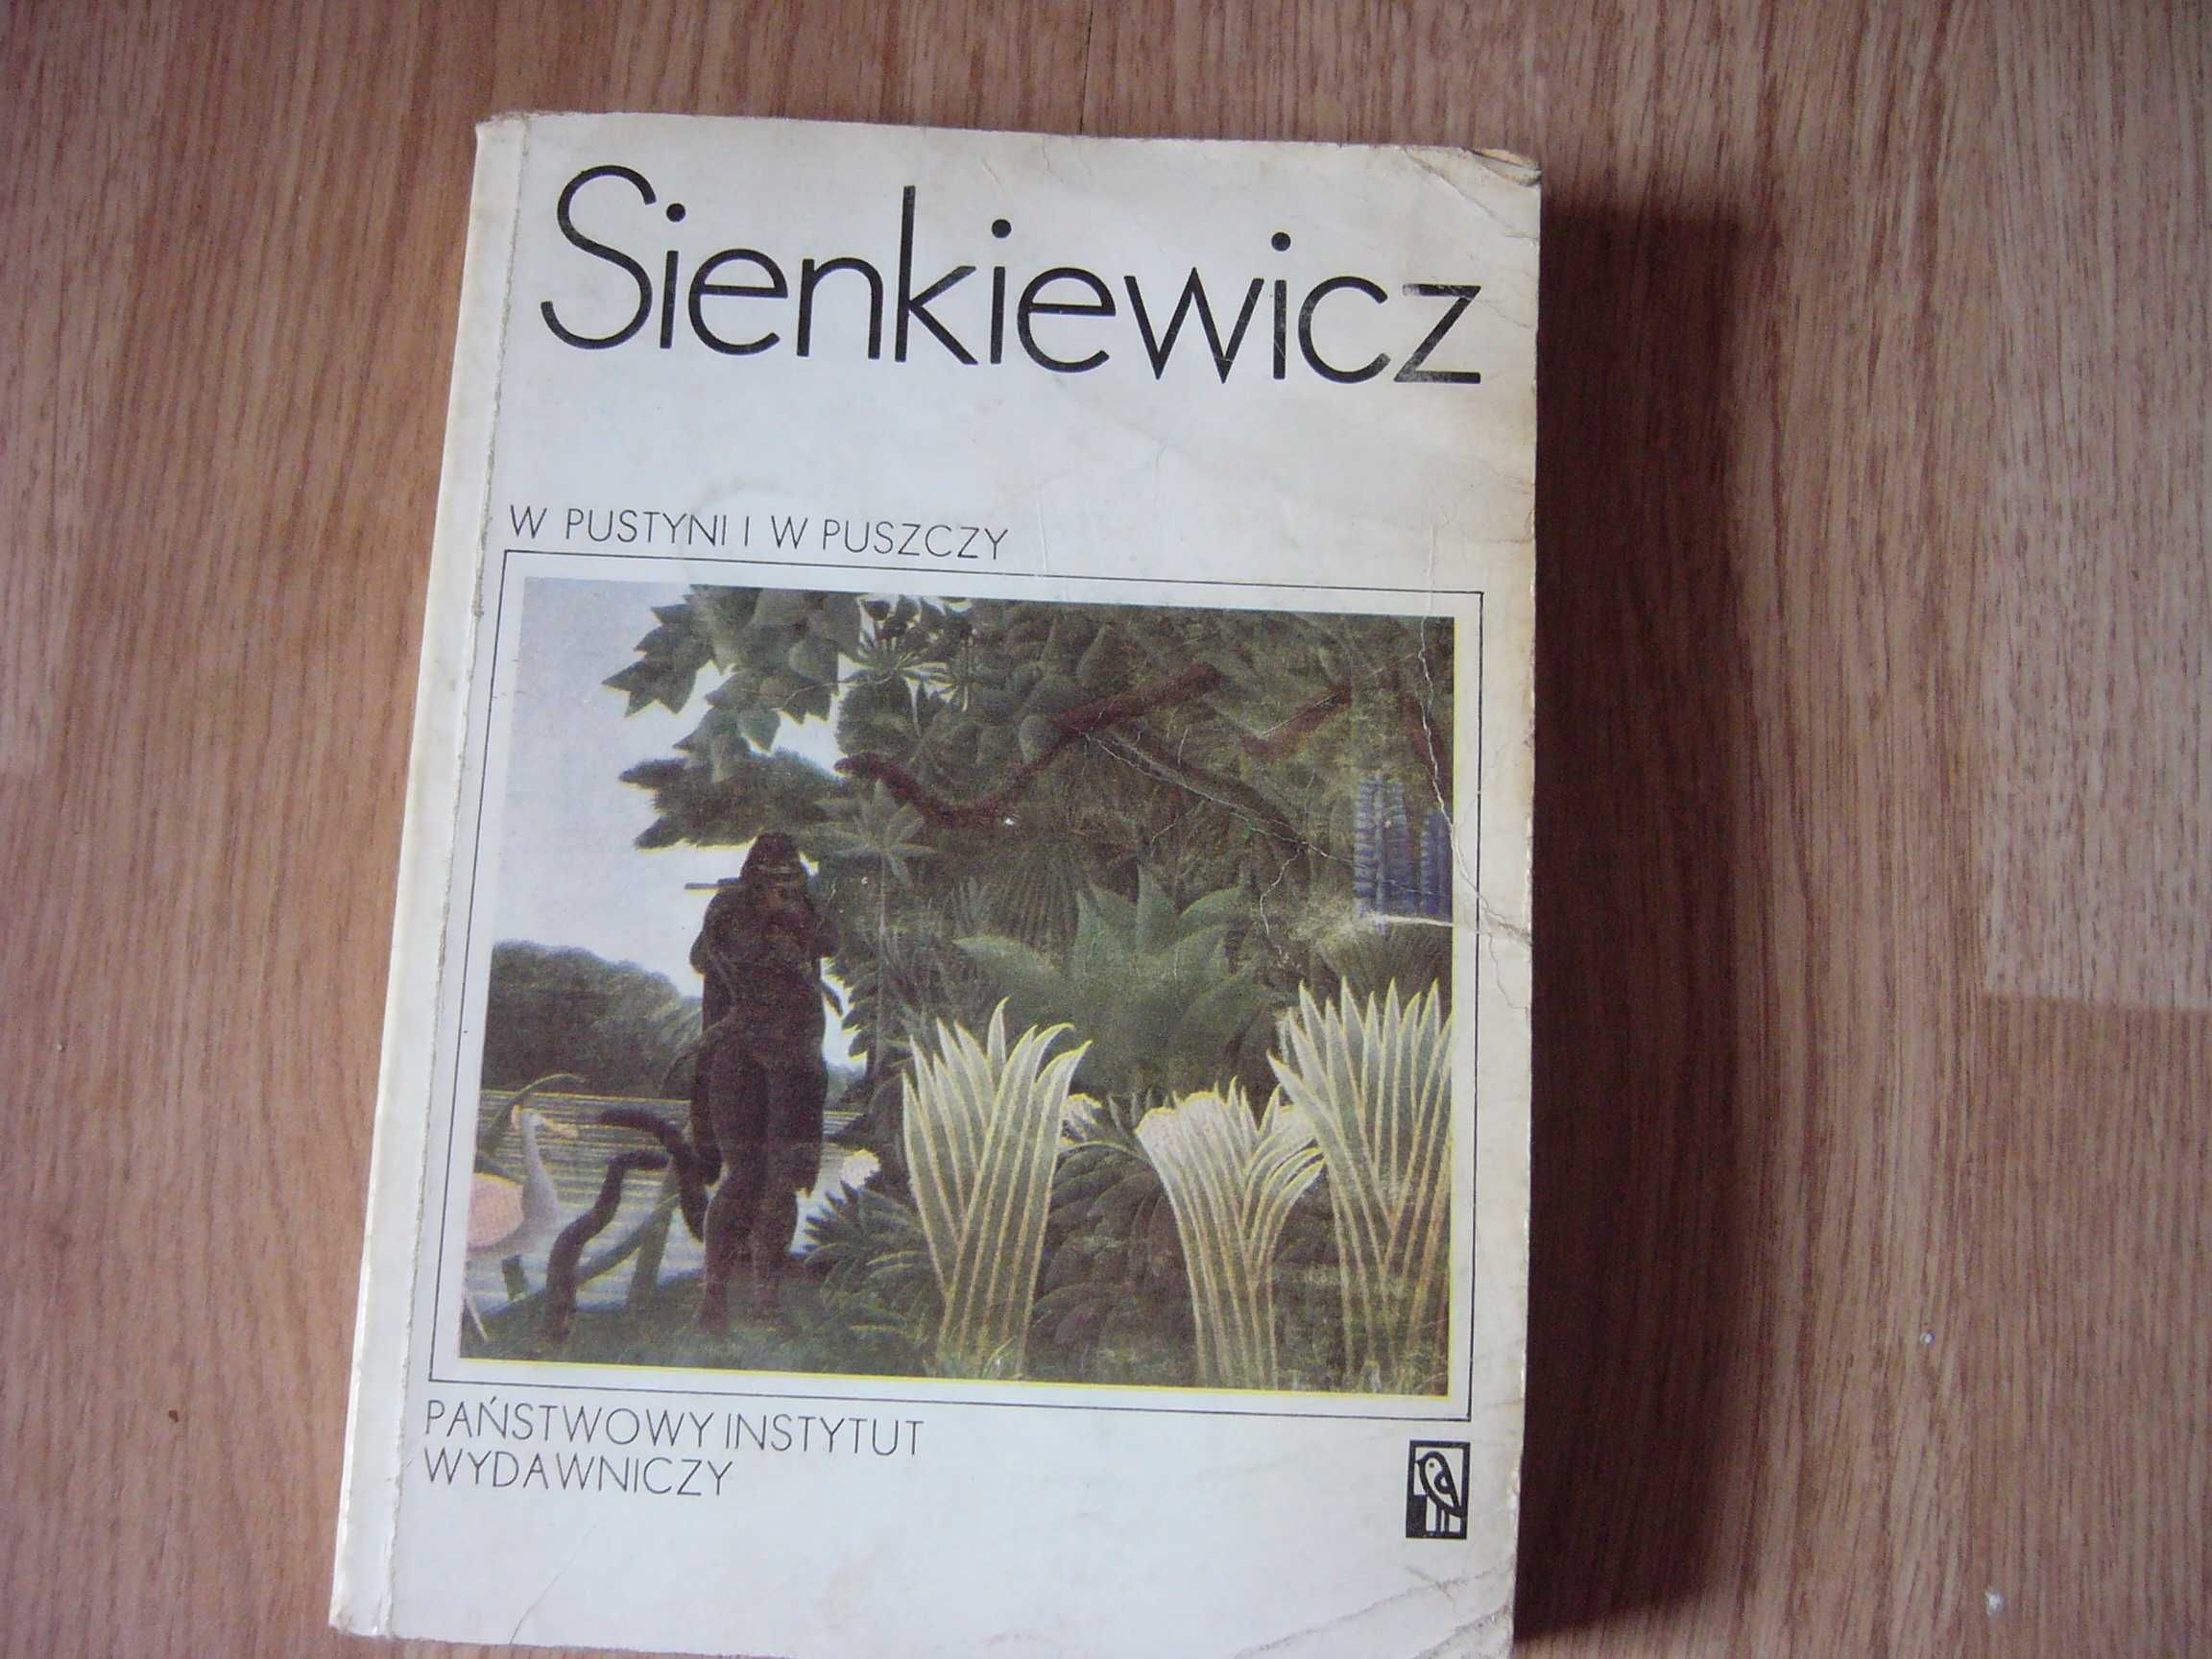 W pustyni i w puszczy - Sienkiewicz